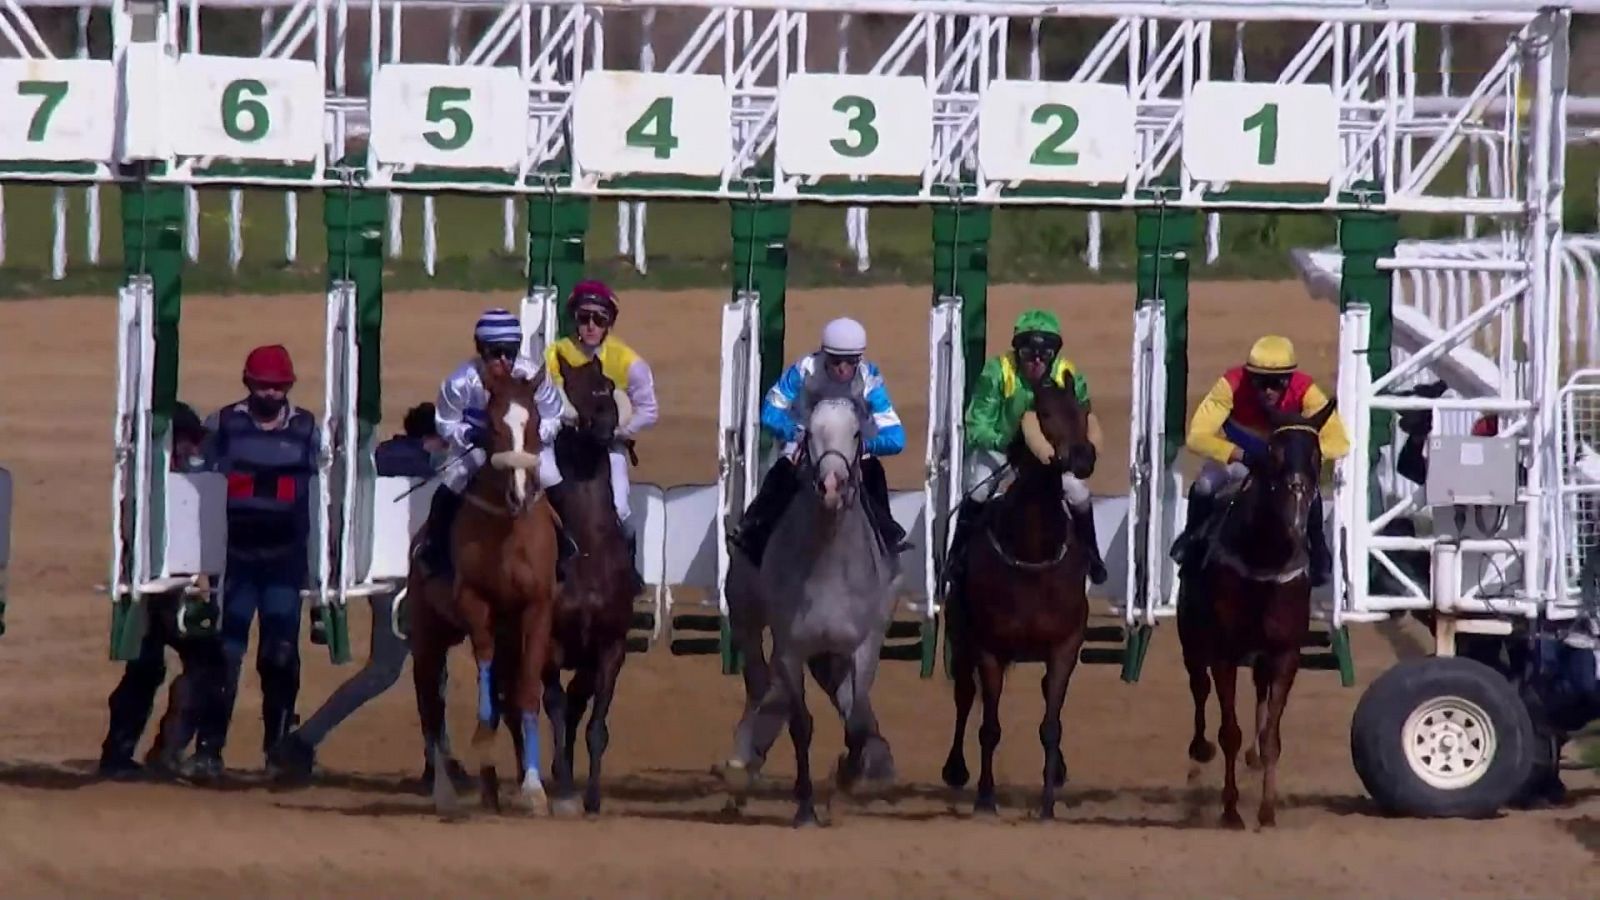 Hípica: Circuito nacional de carreras de caballos desde el Hipódromo de Dos Hermanas - RTVE.es